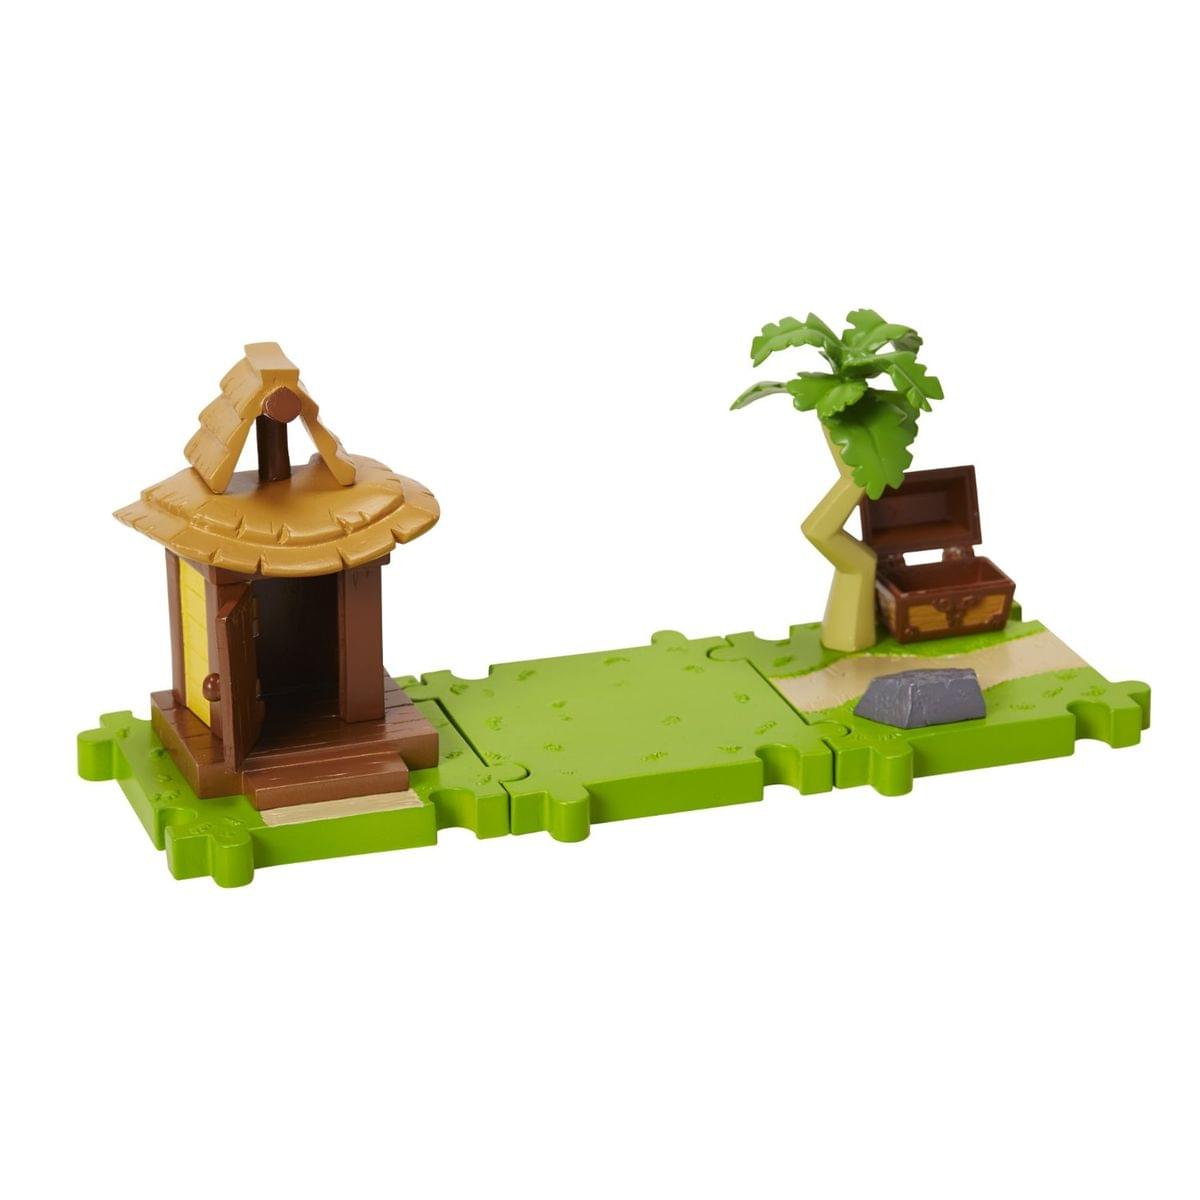 Legend of Zelda Micro Figure Playset: Link & Outset Island